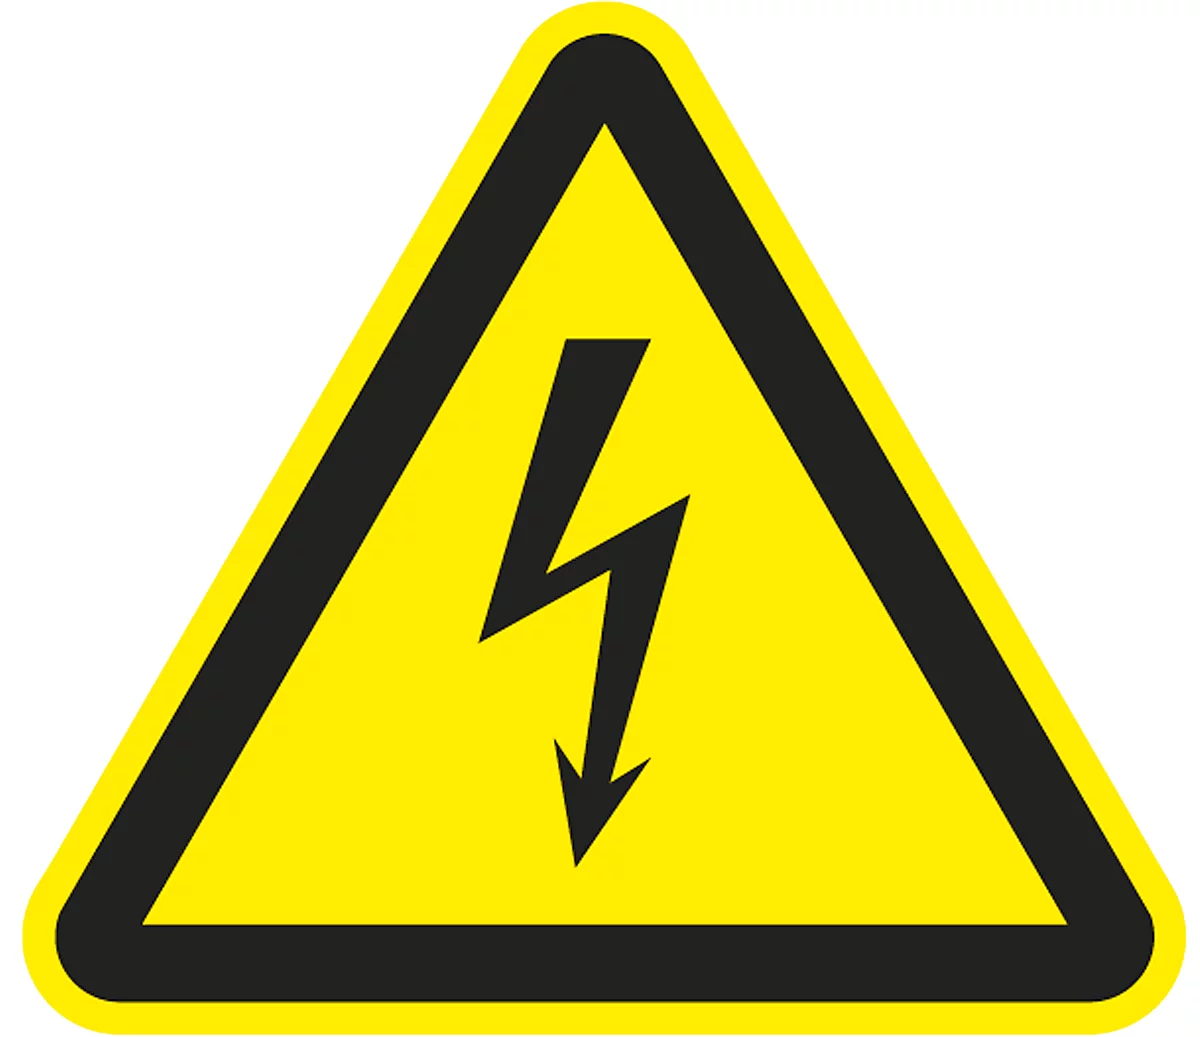 Warnzeichen "Warnung vor elektrischer Spannung", Folie